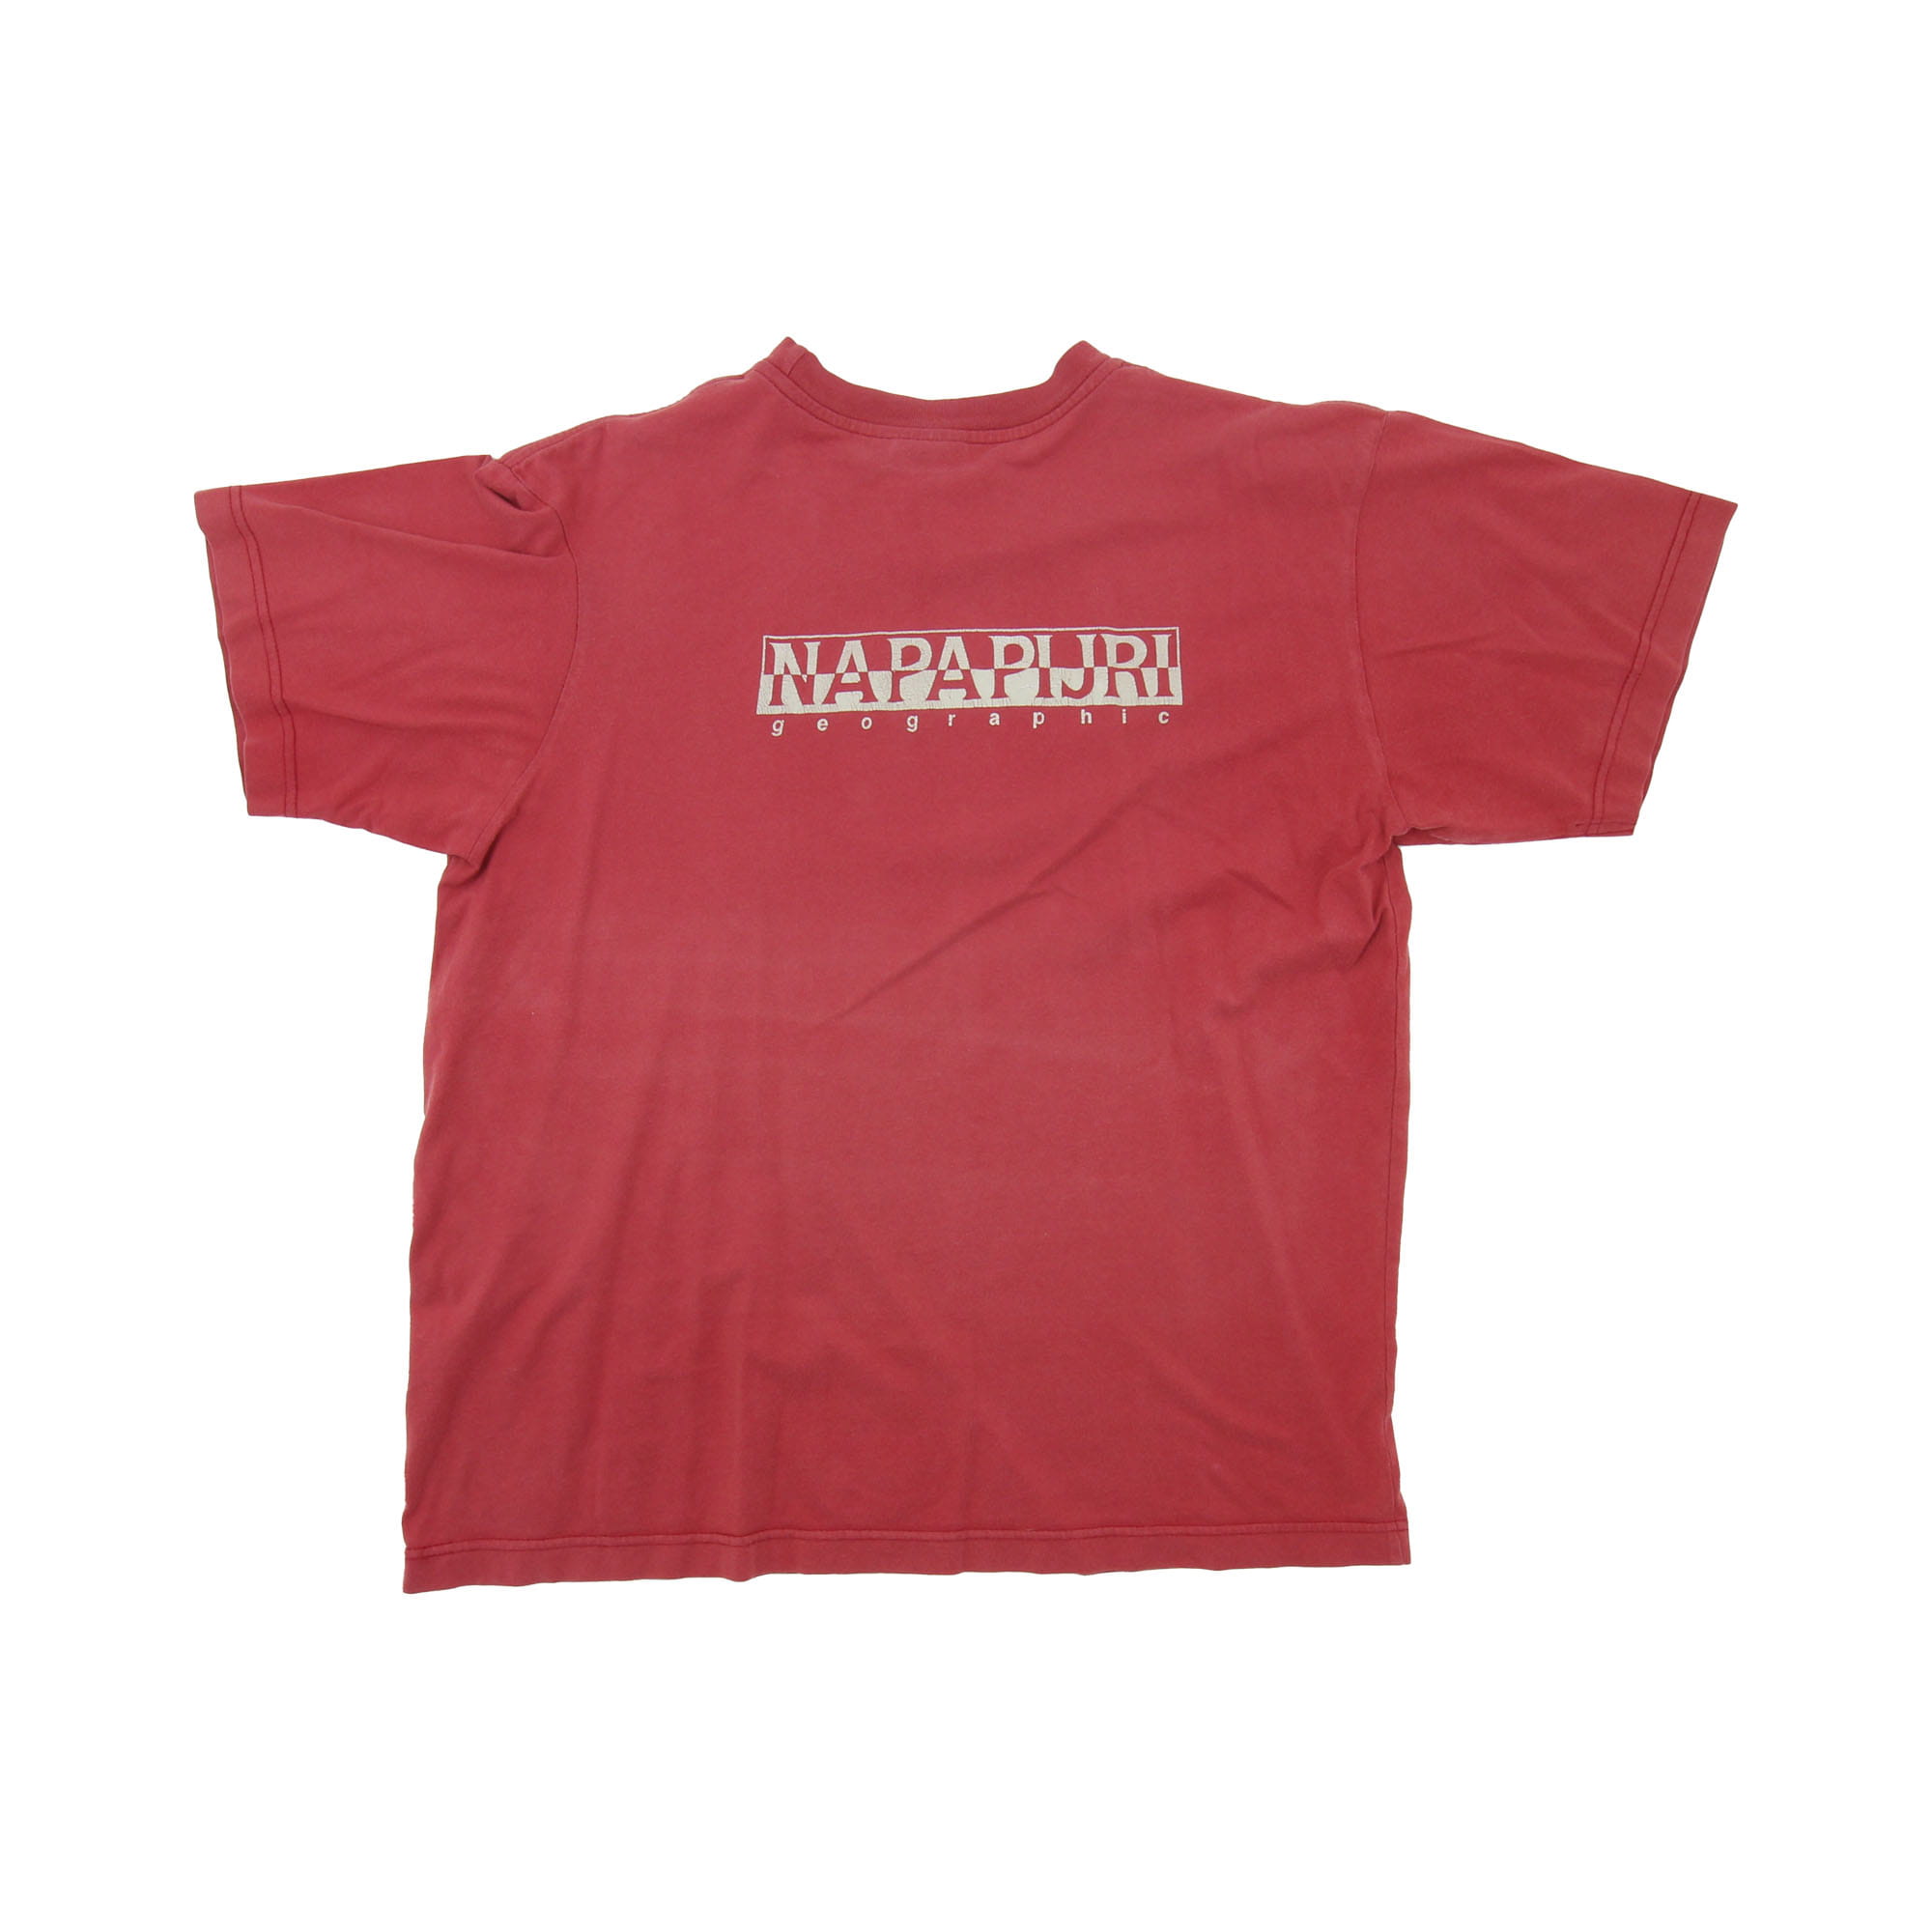 Napapijri T-Shirt Red -  L